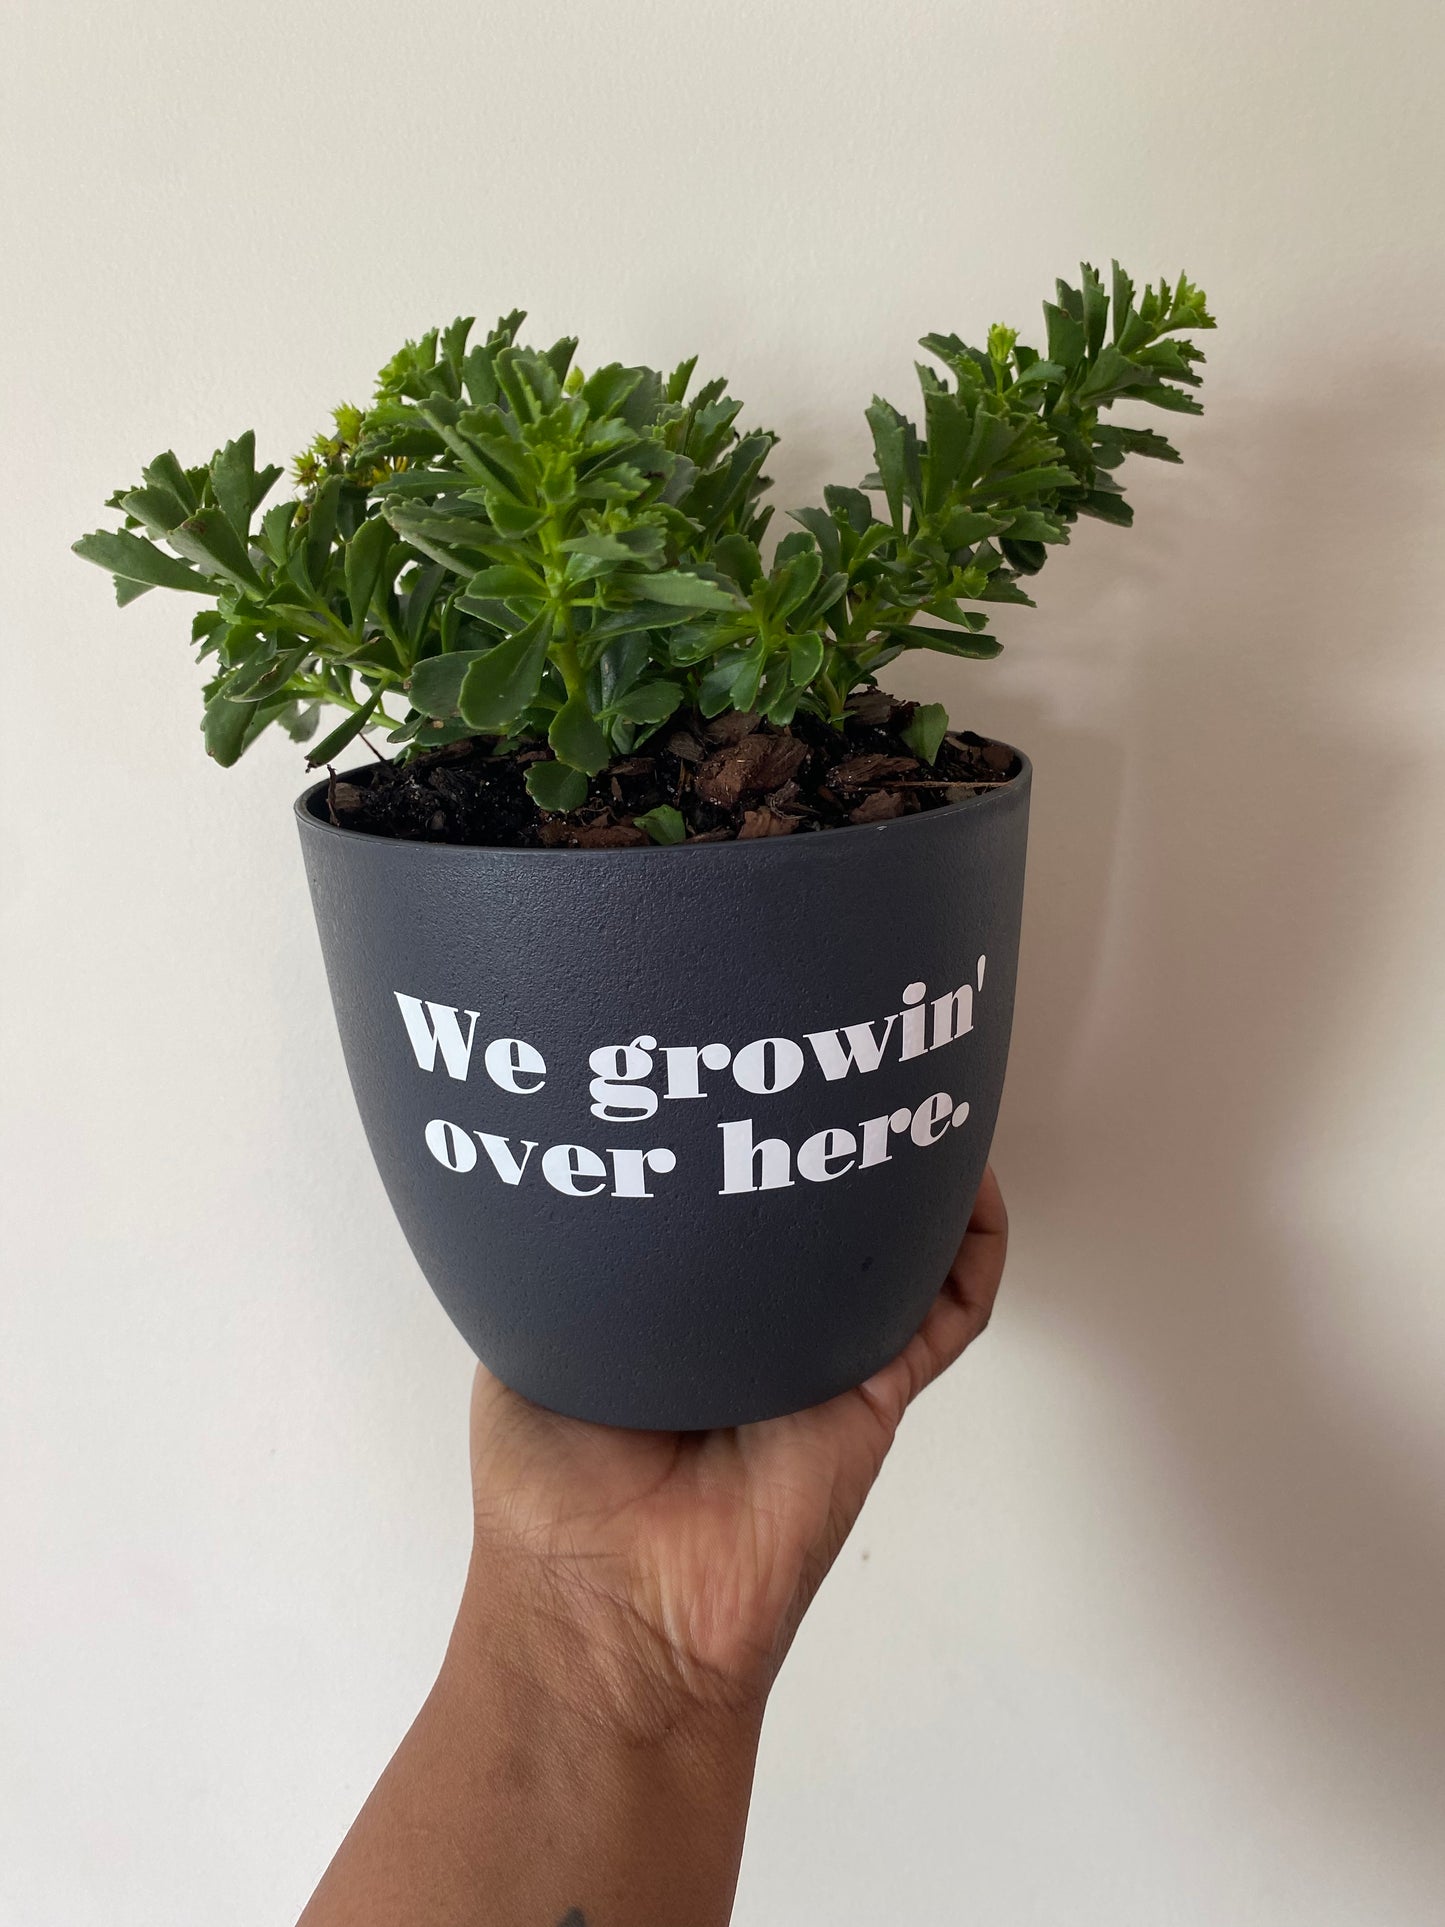 We growin’ over here